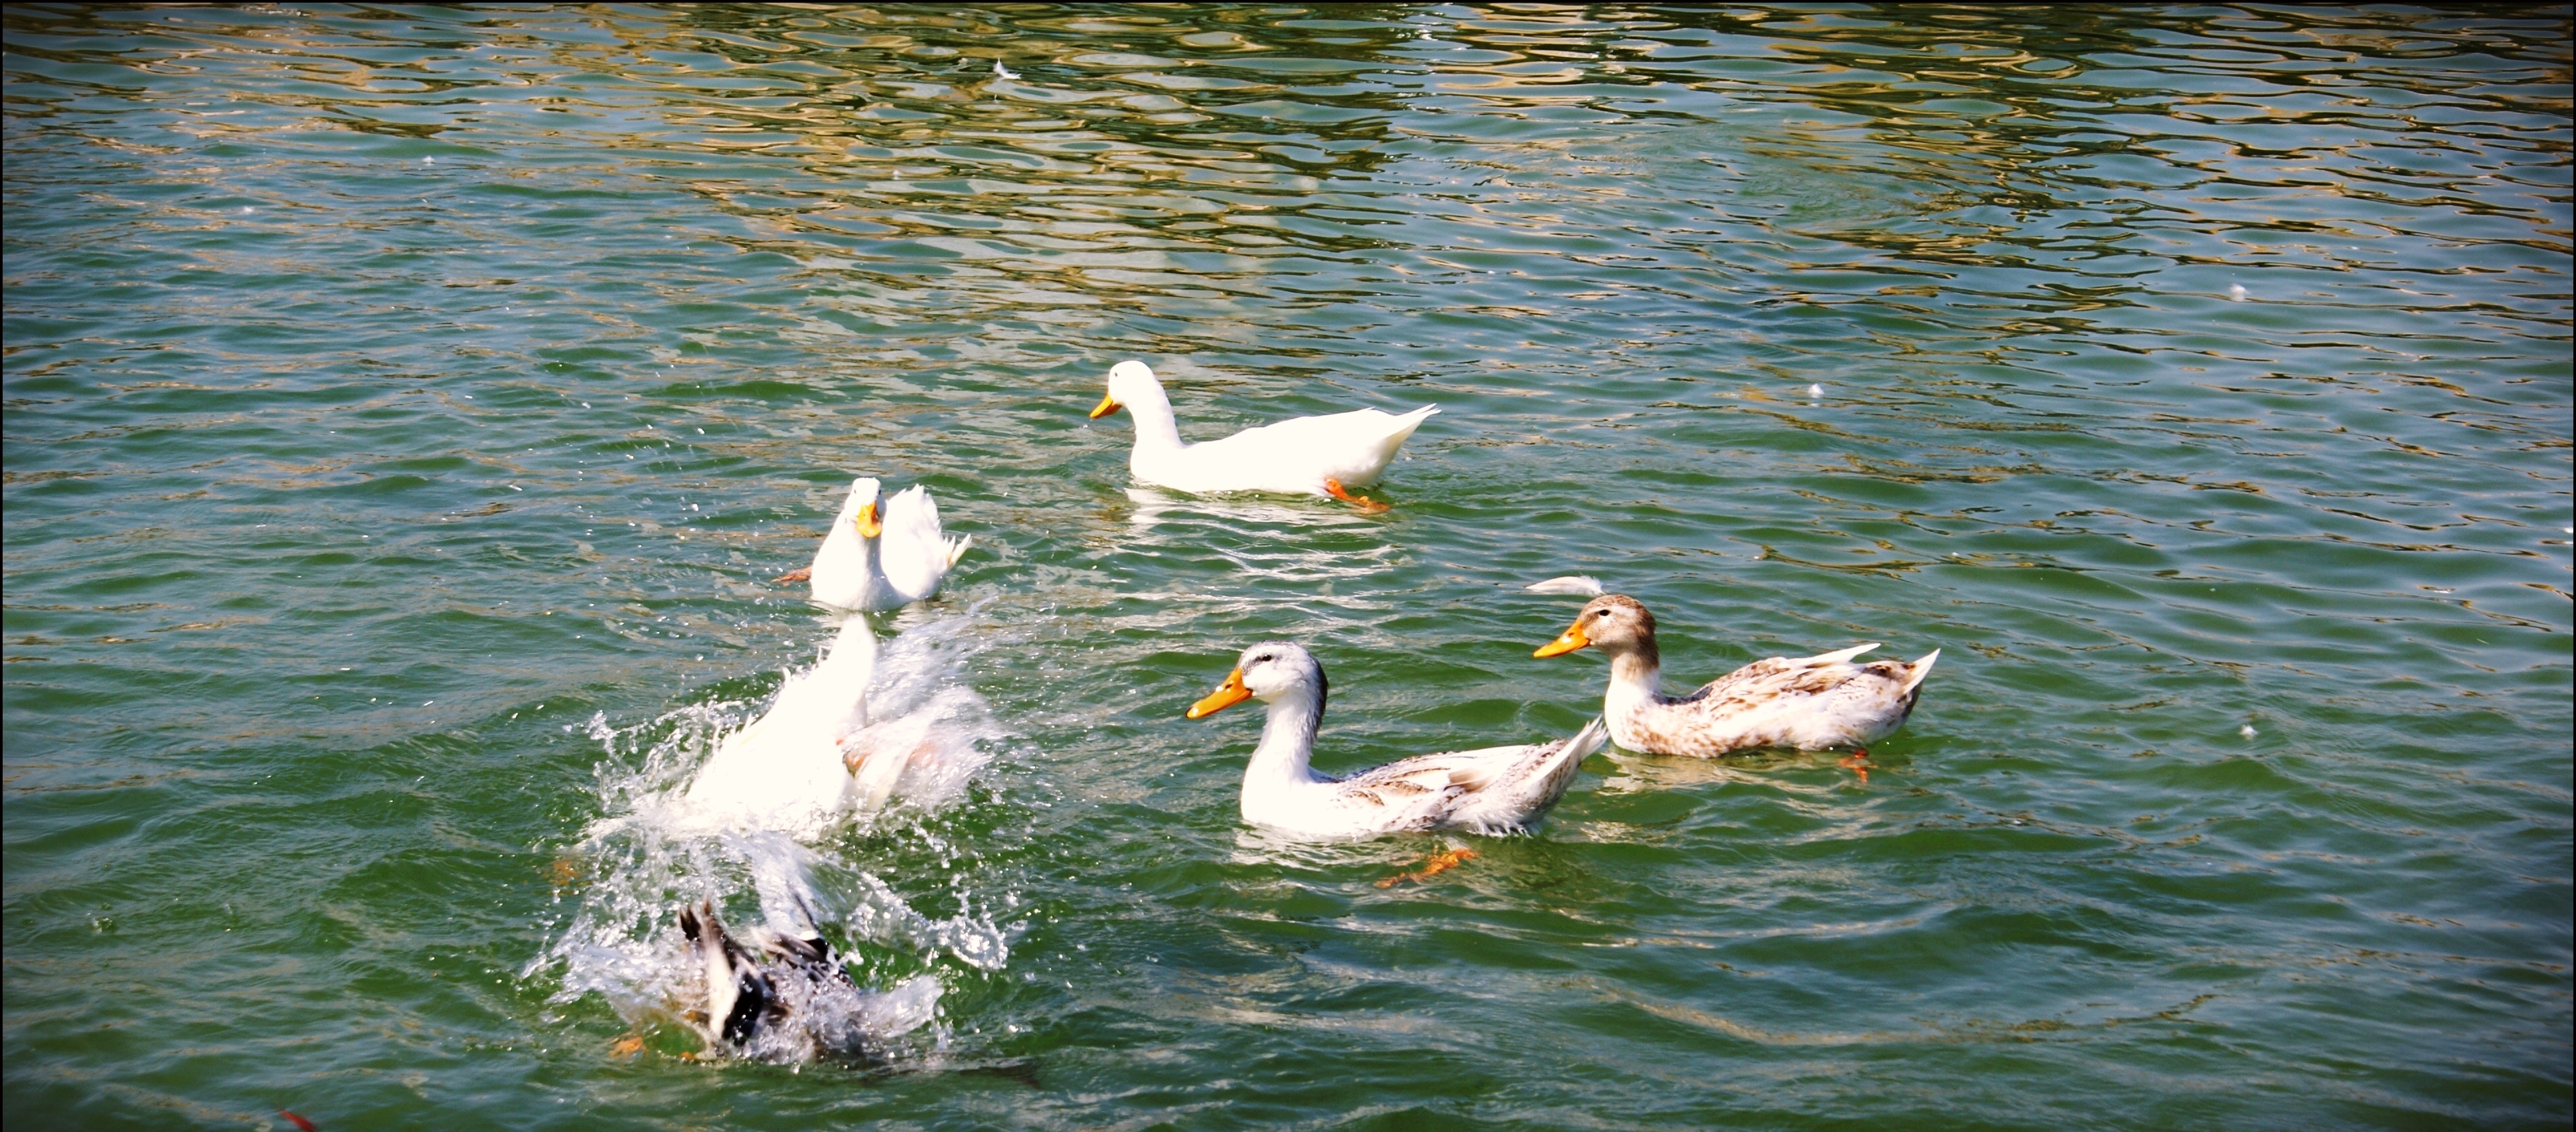 File:Ducks in Water.JPG - Wikimedia Commons